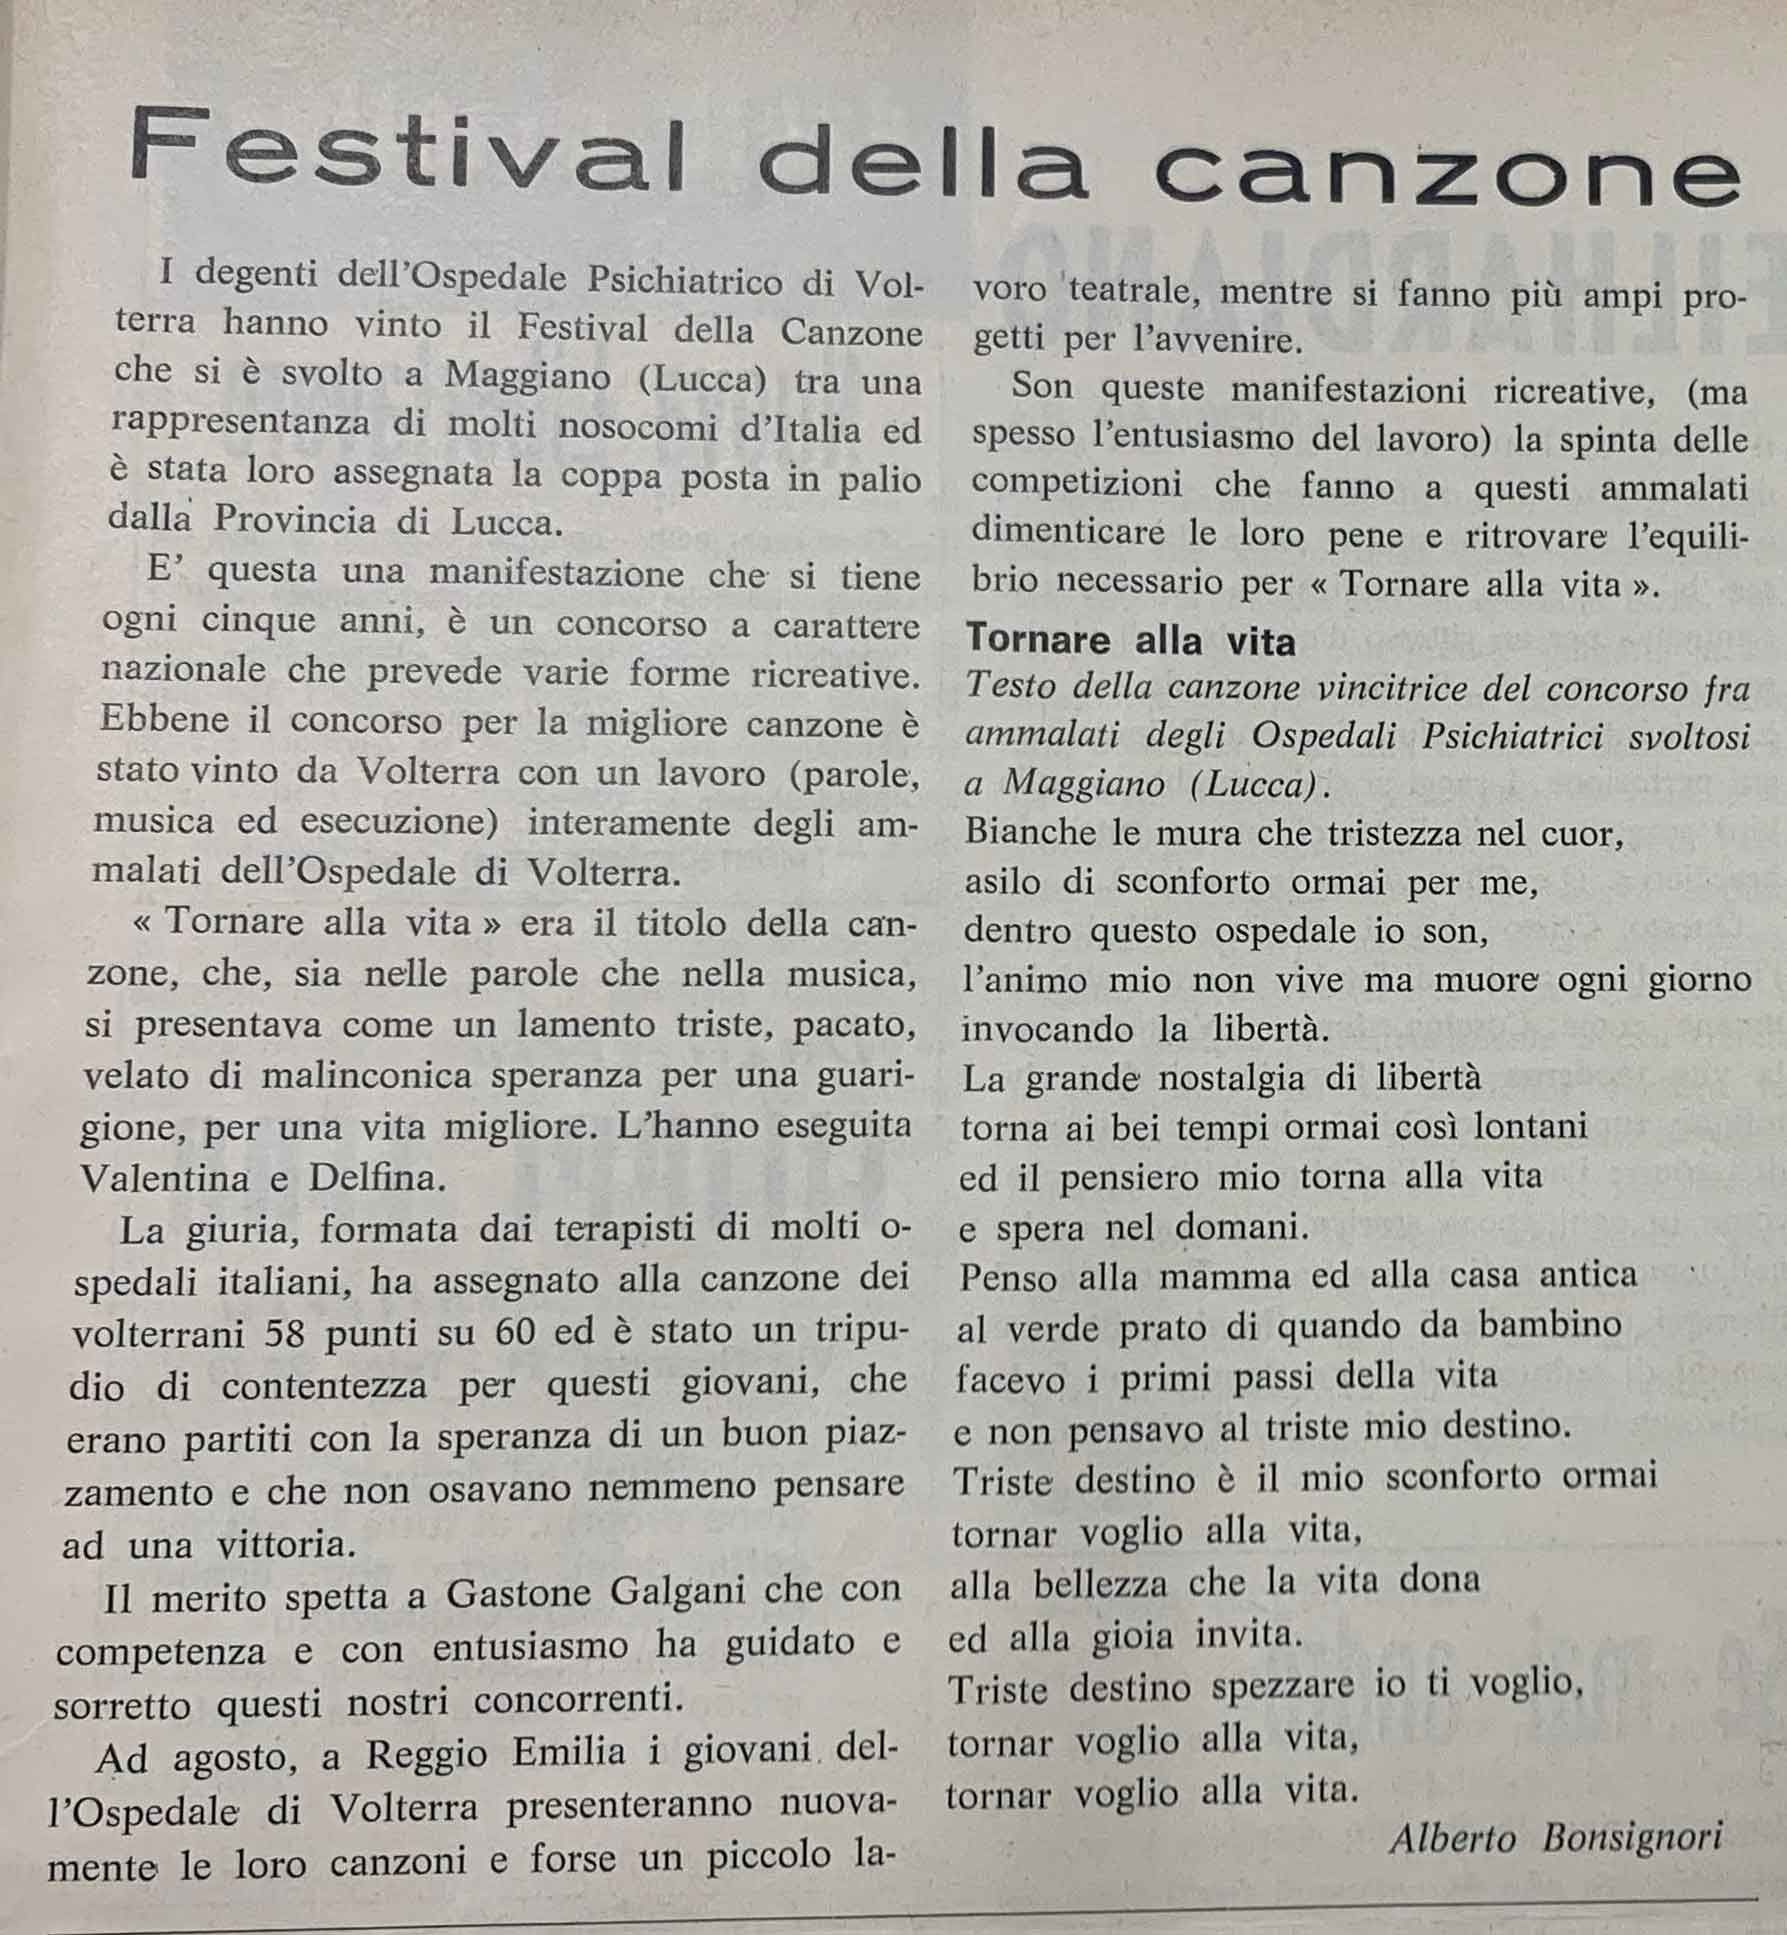 Festival della canzone (1968)